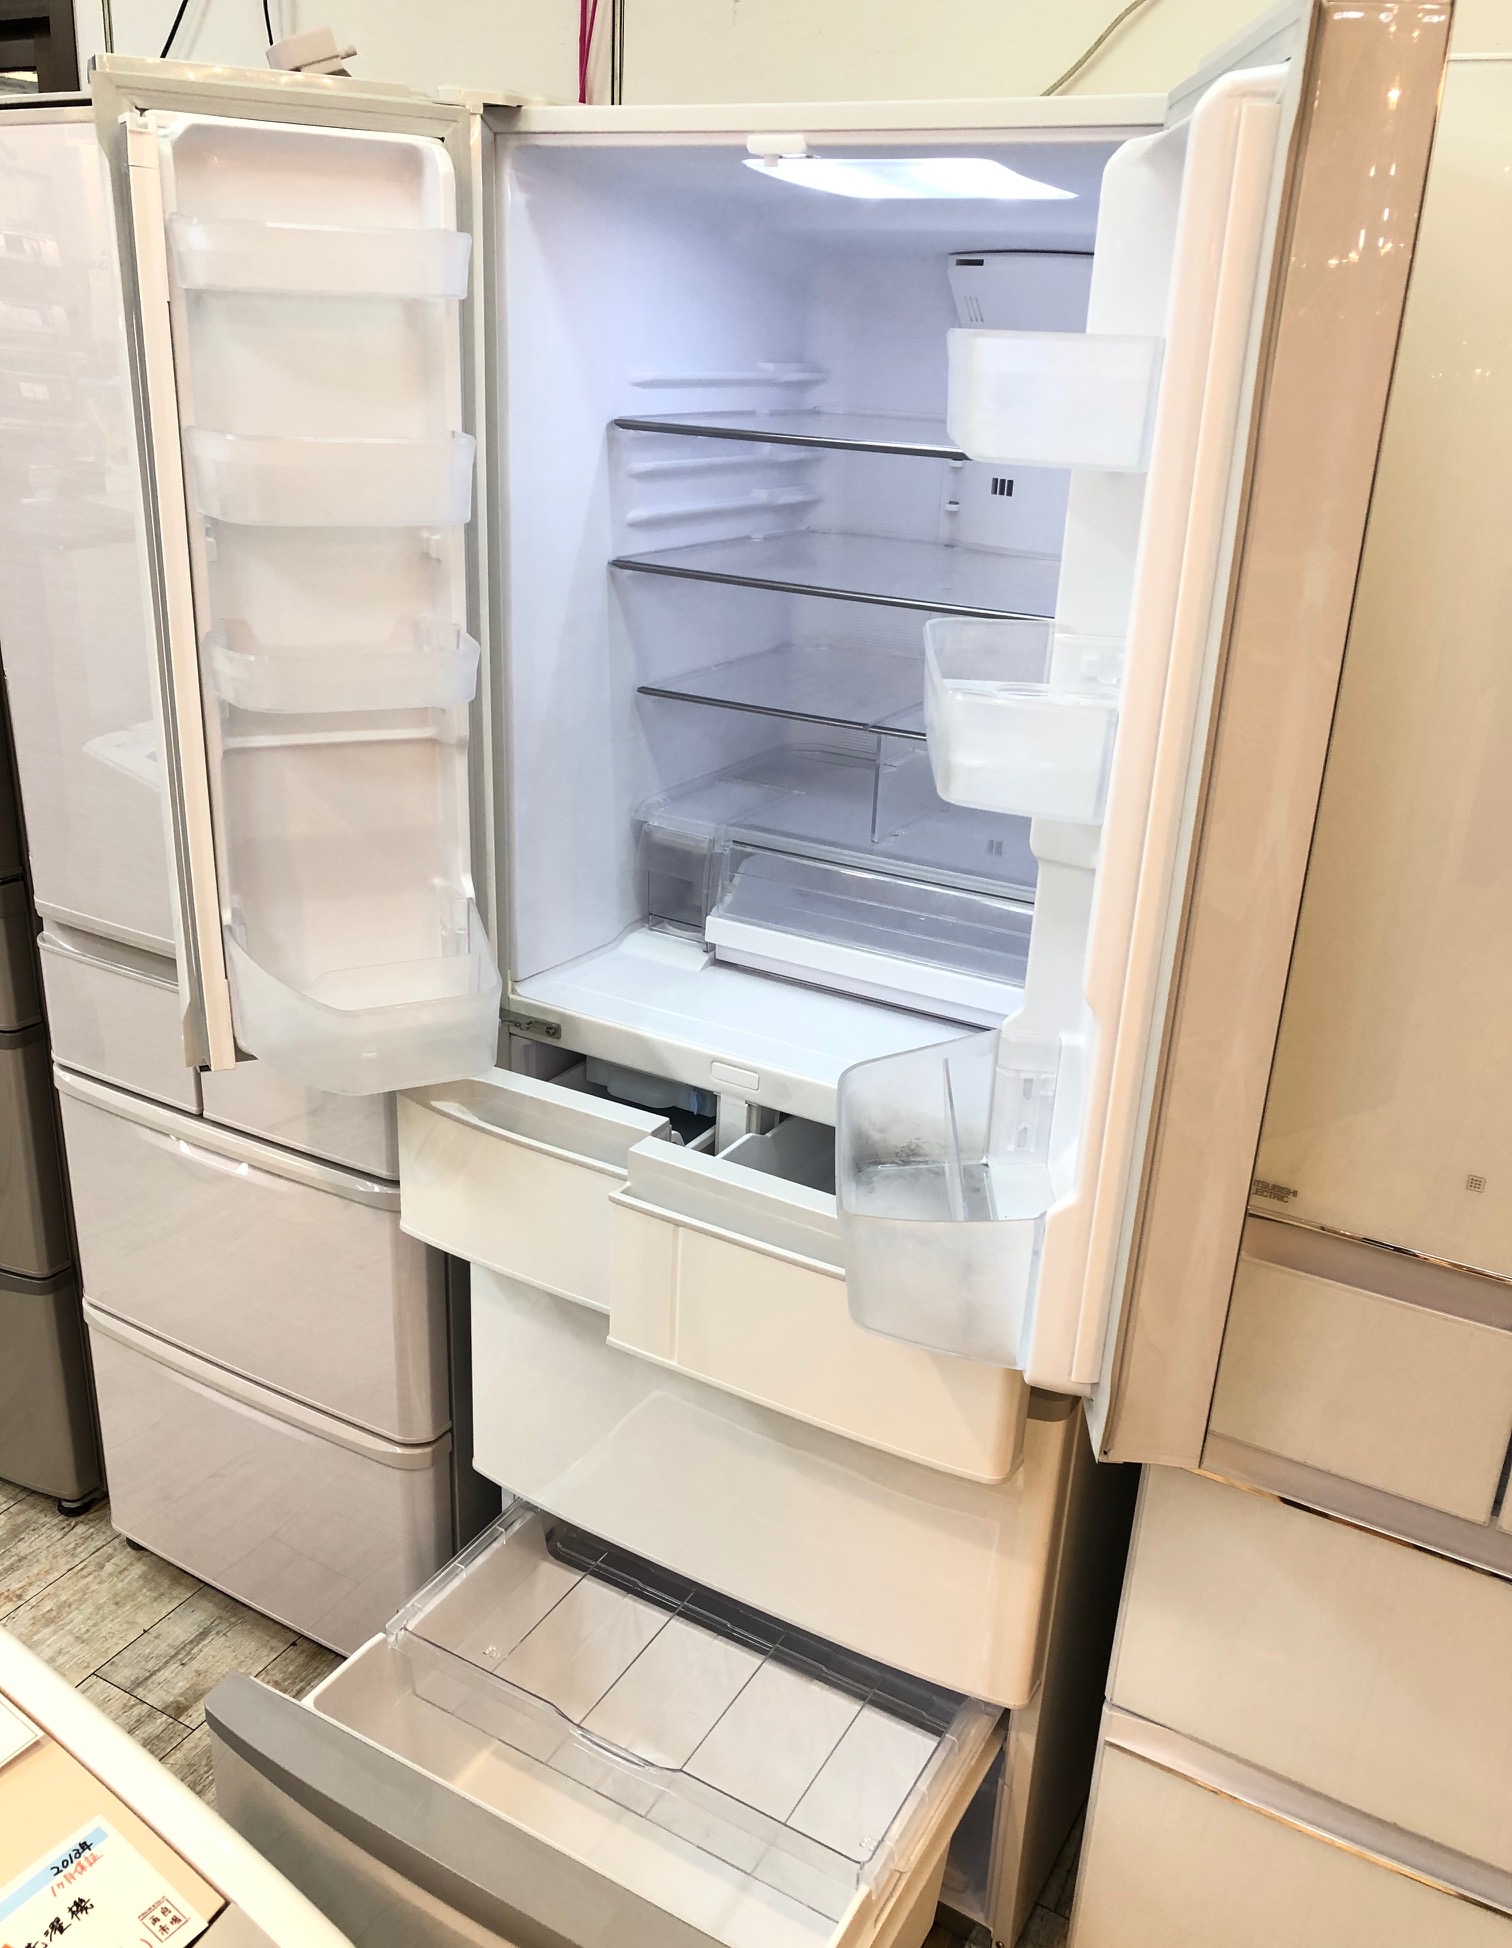 2018年製HITACHI超大型6ドア冷蔵庫です！ - キッチン家電